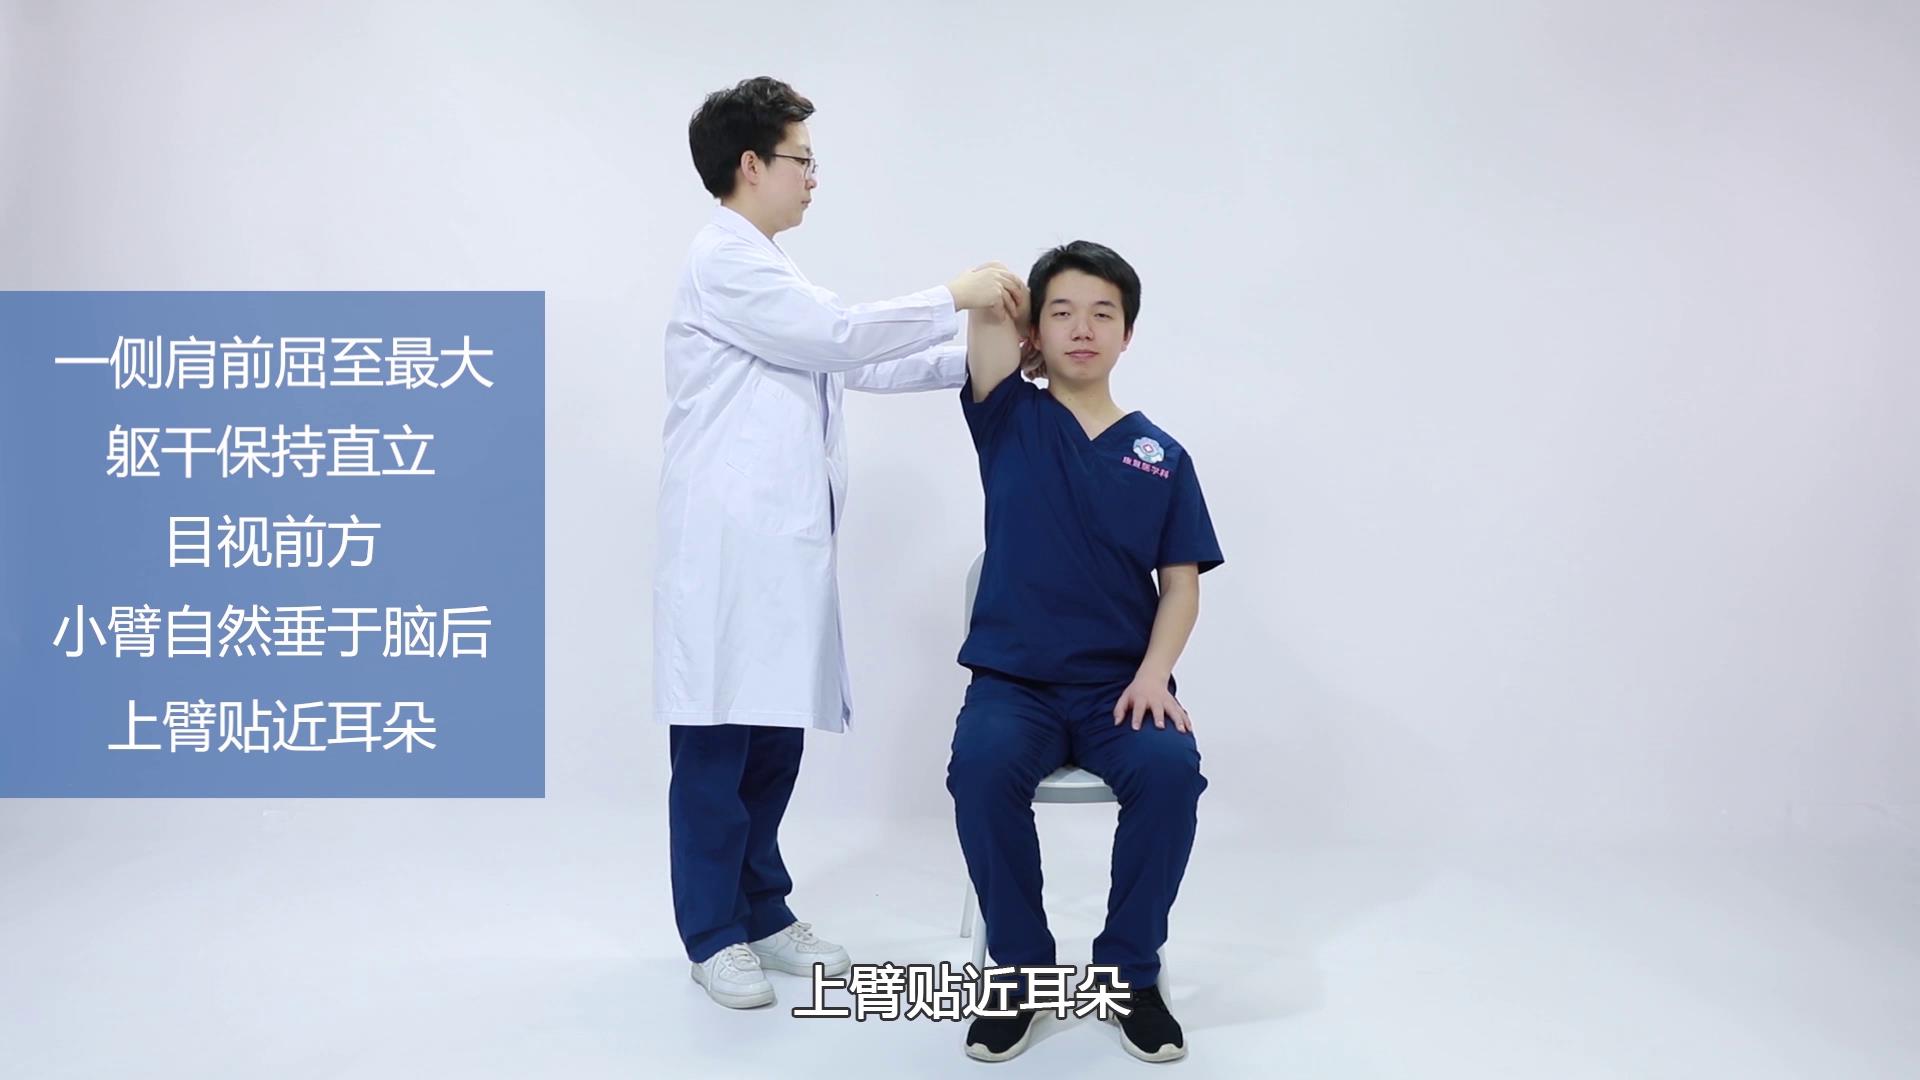 【康复训练短视频⑥】新冠肺炎患者出院后上肢力量训练法